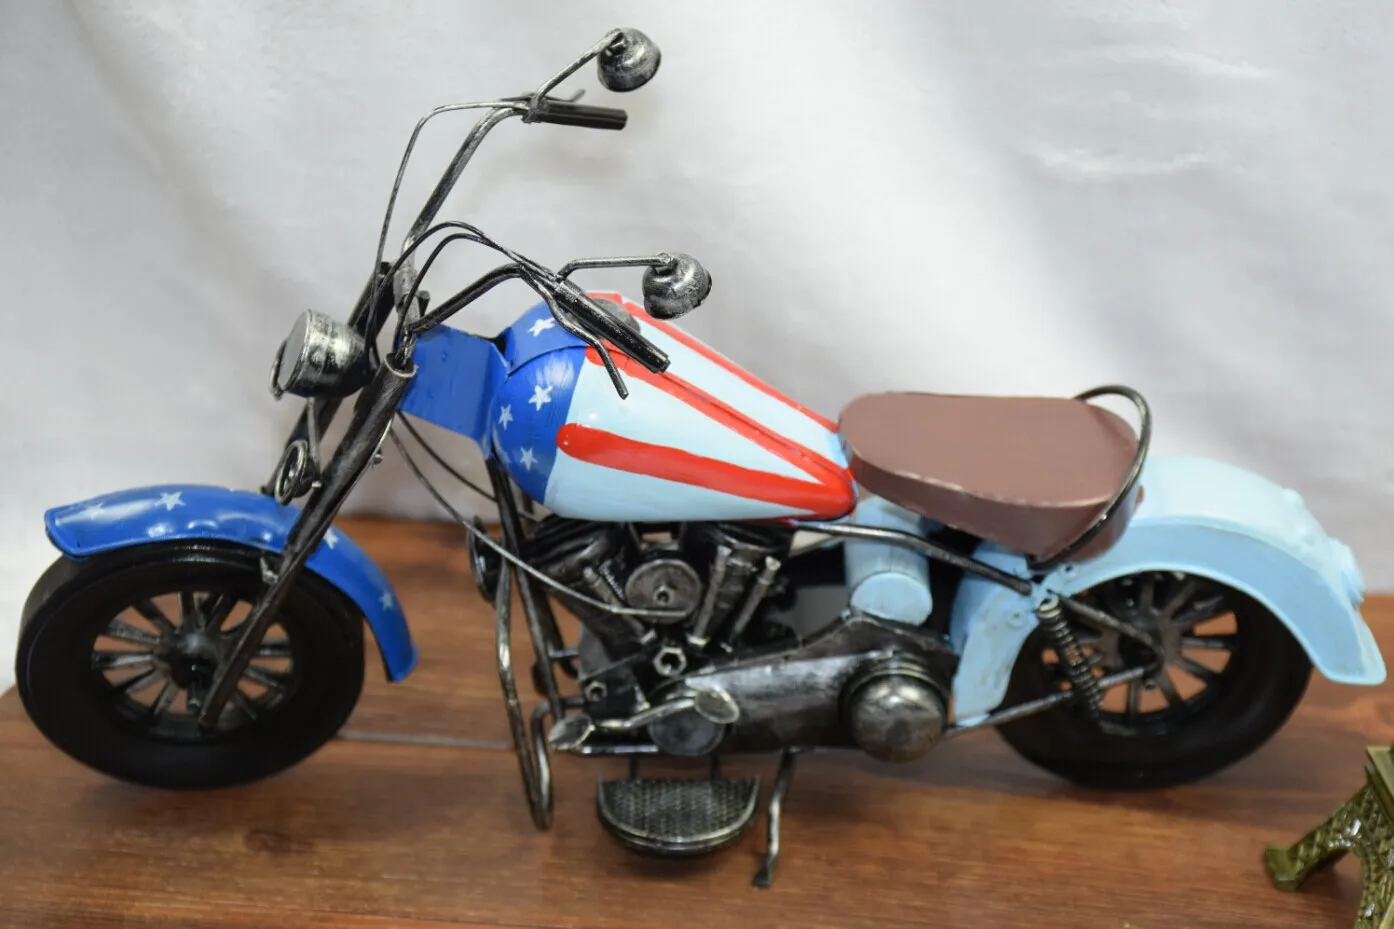 Retro Tincate Motorcycle Diecast Model Samochód Zabawka Z Amerykańską Flagą, Klasyczny Ręcznie robiony Praca Sztuki, Kid Urodziny Party Chłopiec Prezent, Zbieranie, Dekoracja